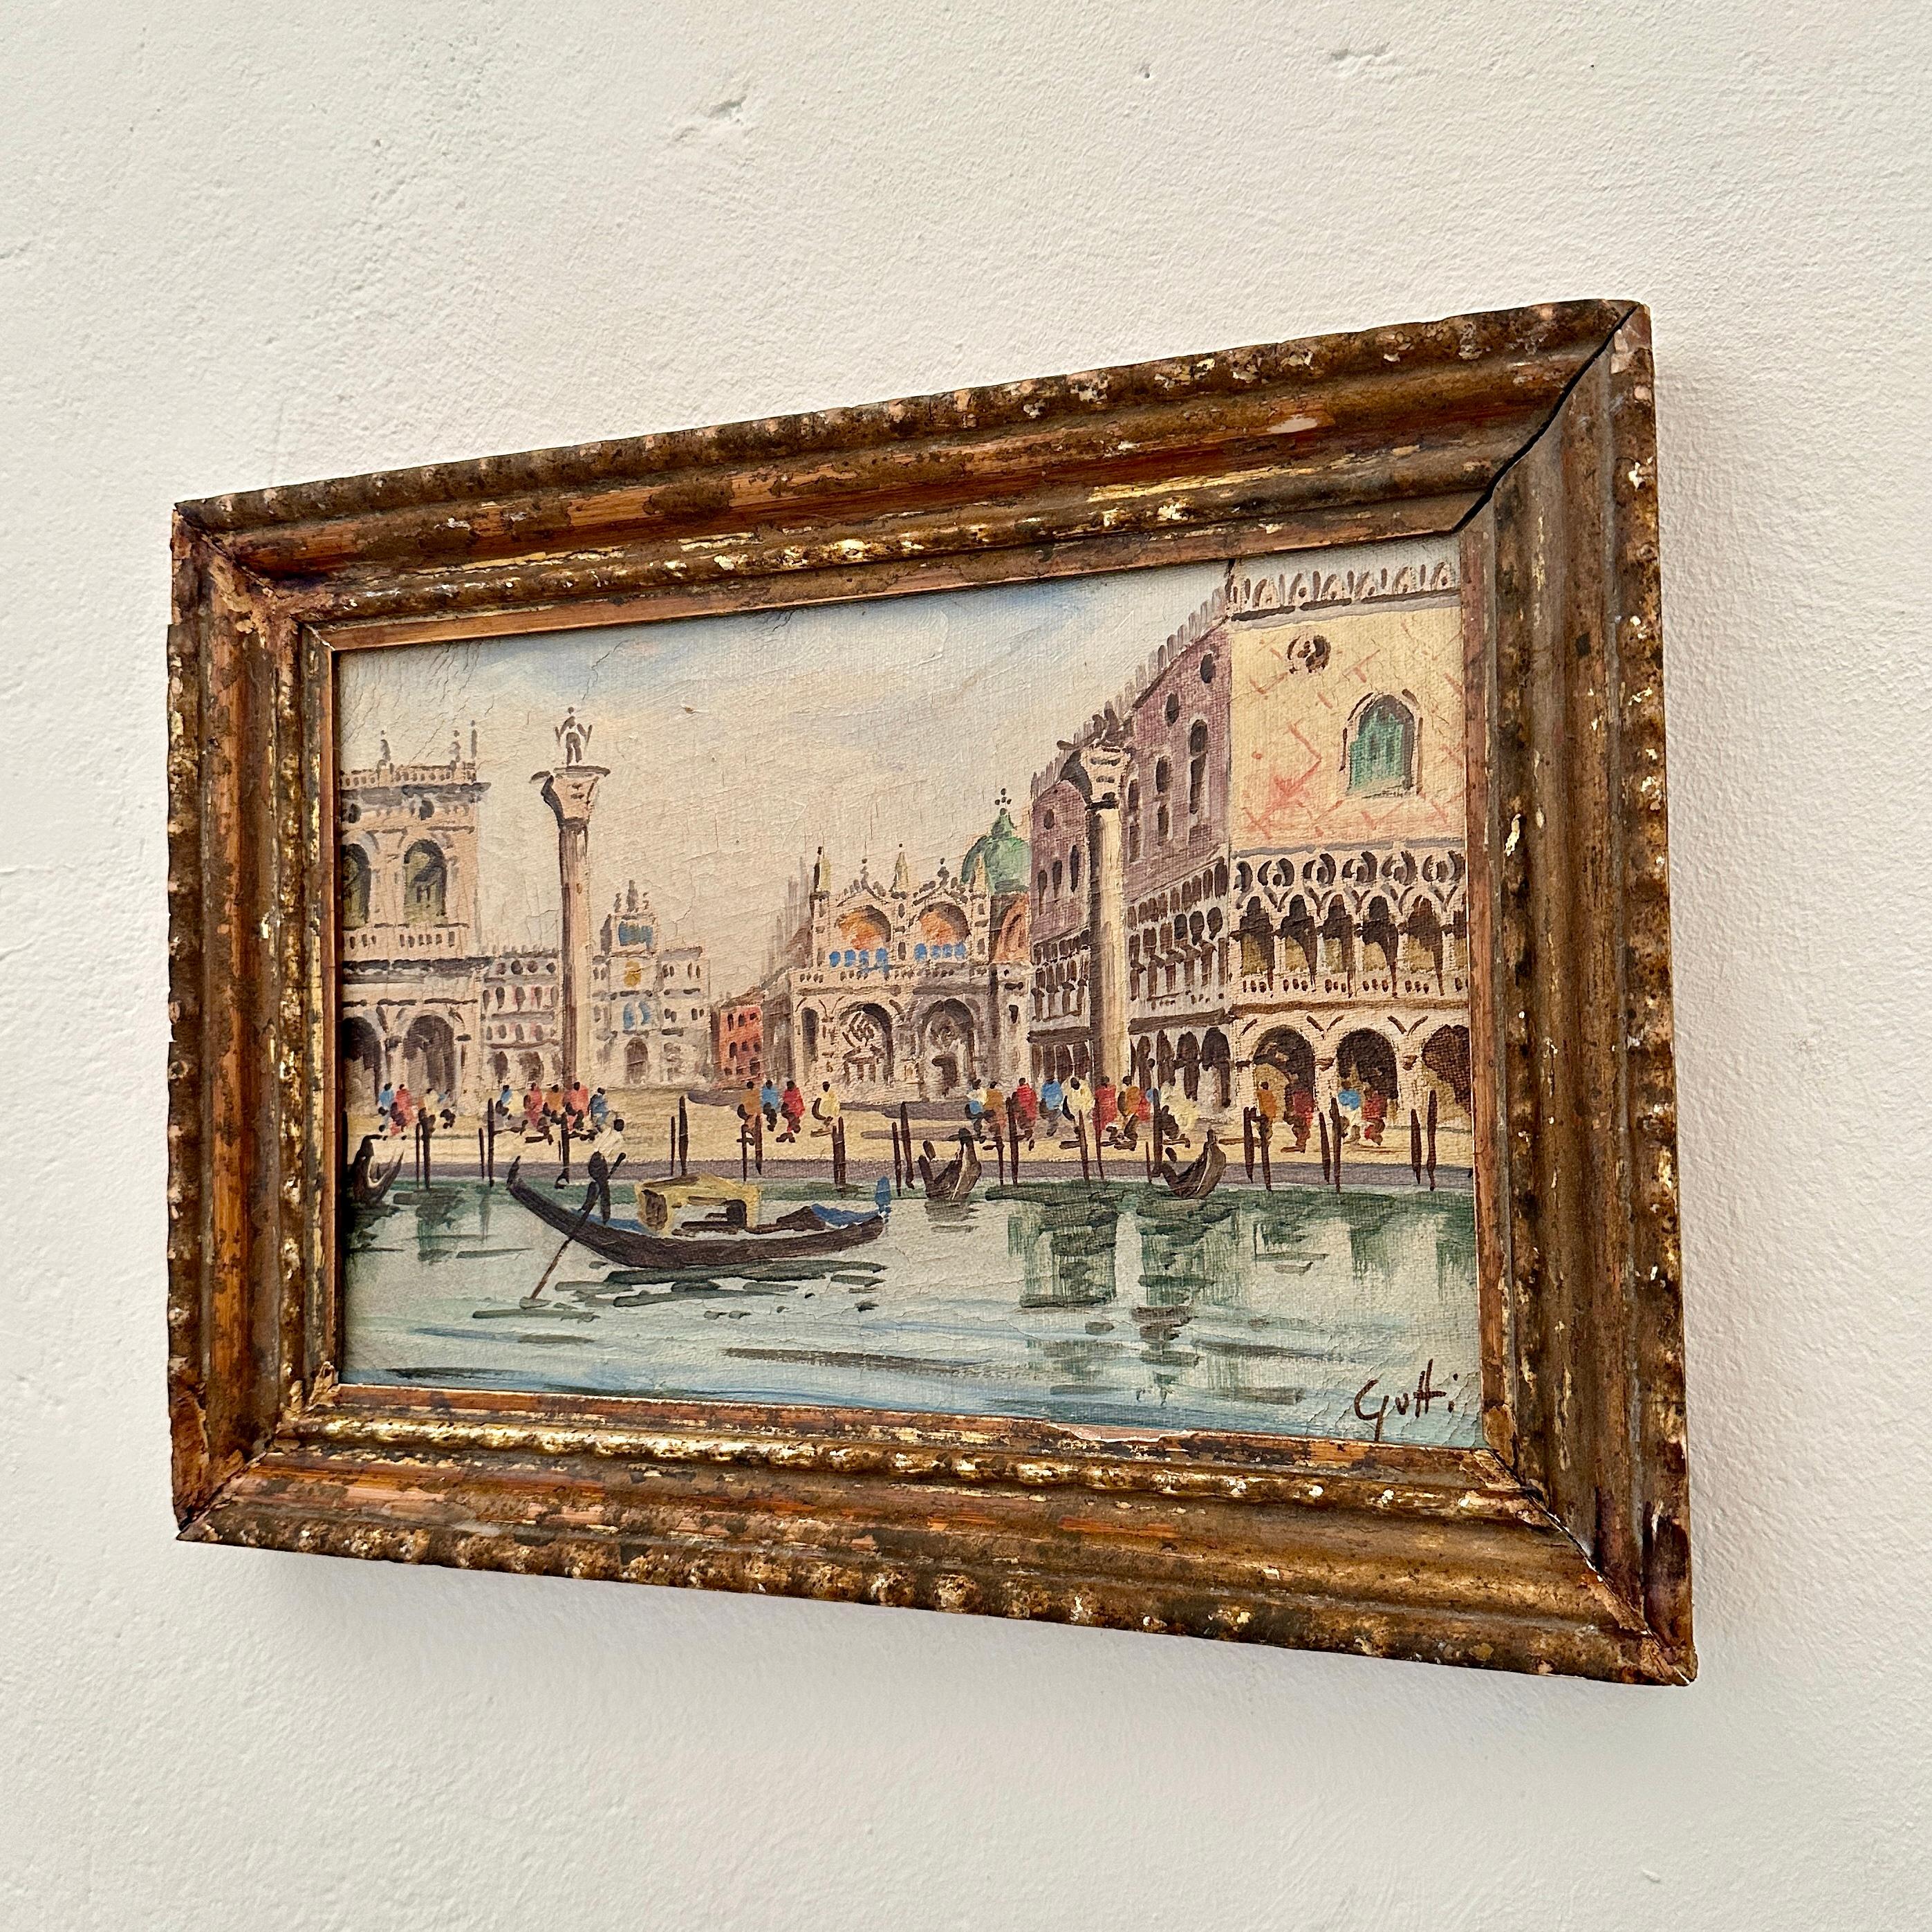 Fantastisches Ölgemälde von Venedig aus dem frühen 20. Jahrhundert, das den Marcusplatz vom Wasser aus zeigt. Es wurde wahrscheinlich um 1904 gemalt.
Das Gemälde ist in einen vergoldeten Rahmen aus dem 18. Jahrhundert eingefasst.
Toller